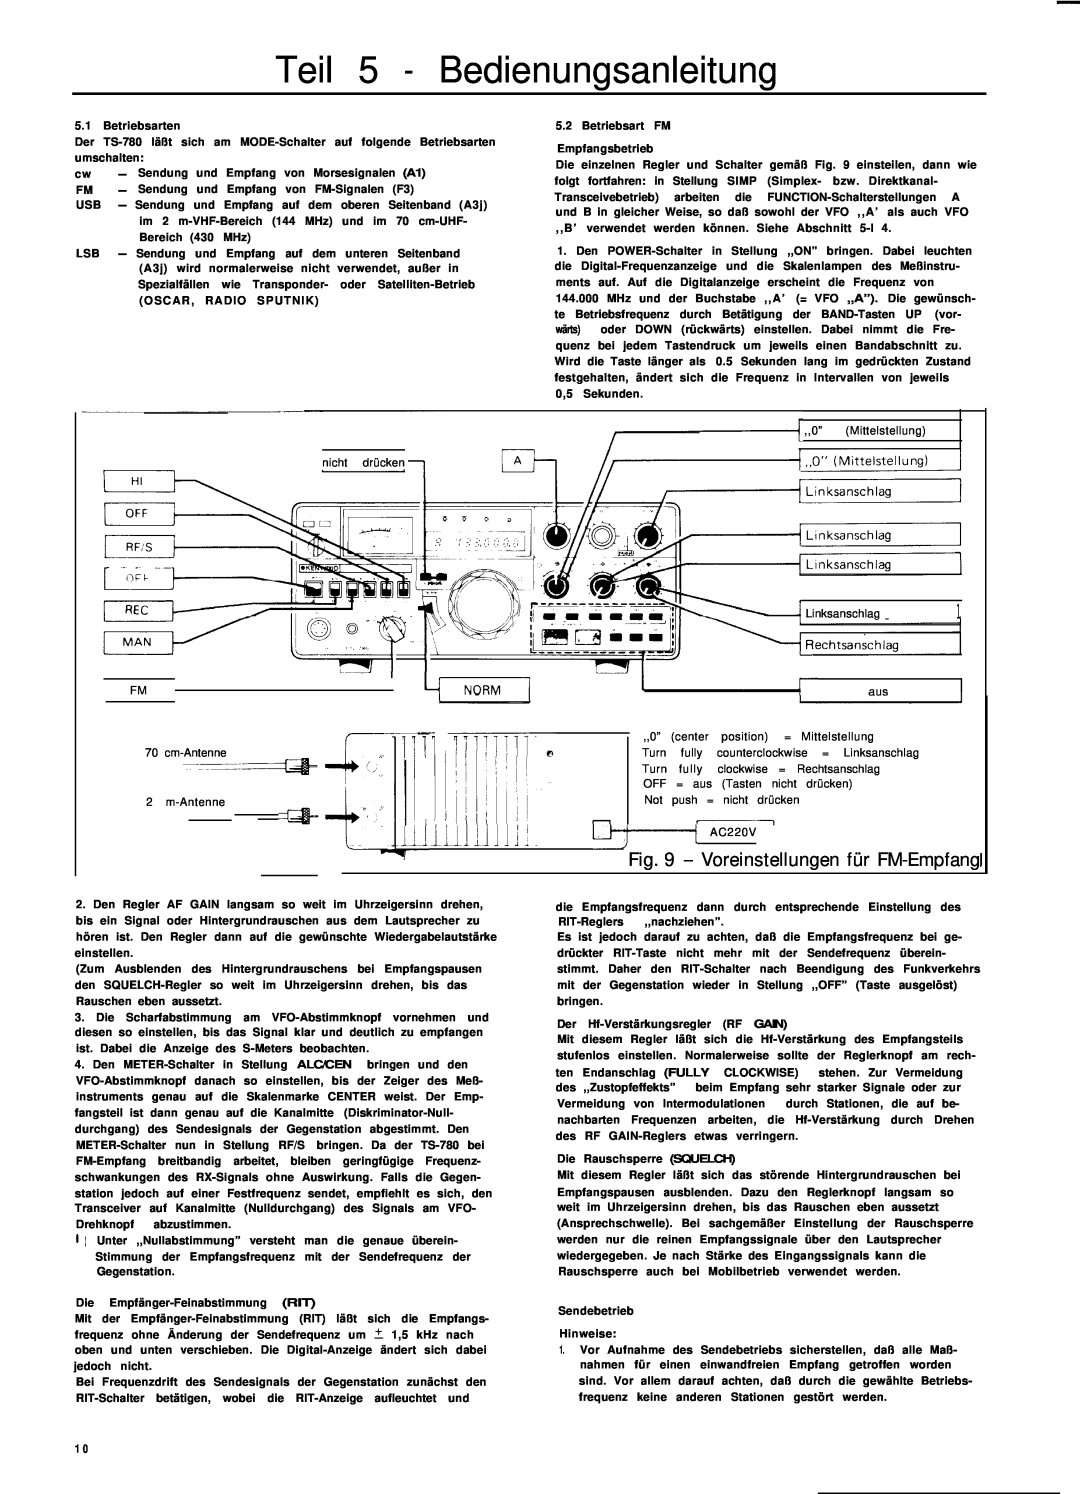 Kenwood TS-780 manual Teil 5 - Bedienungsanleitung, Voreinstellungen für FM-Empfang, lL.Millii 